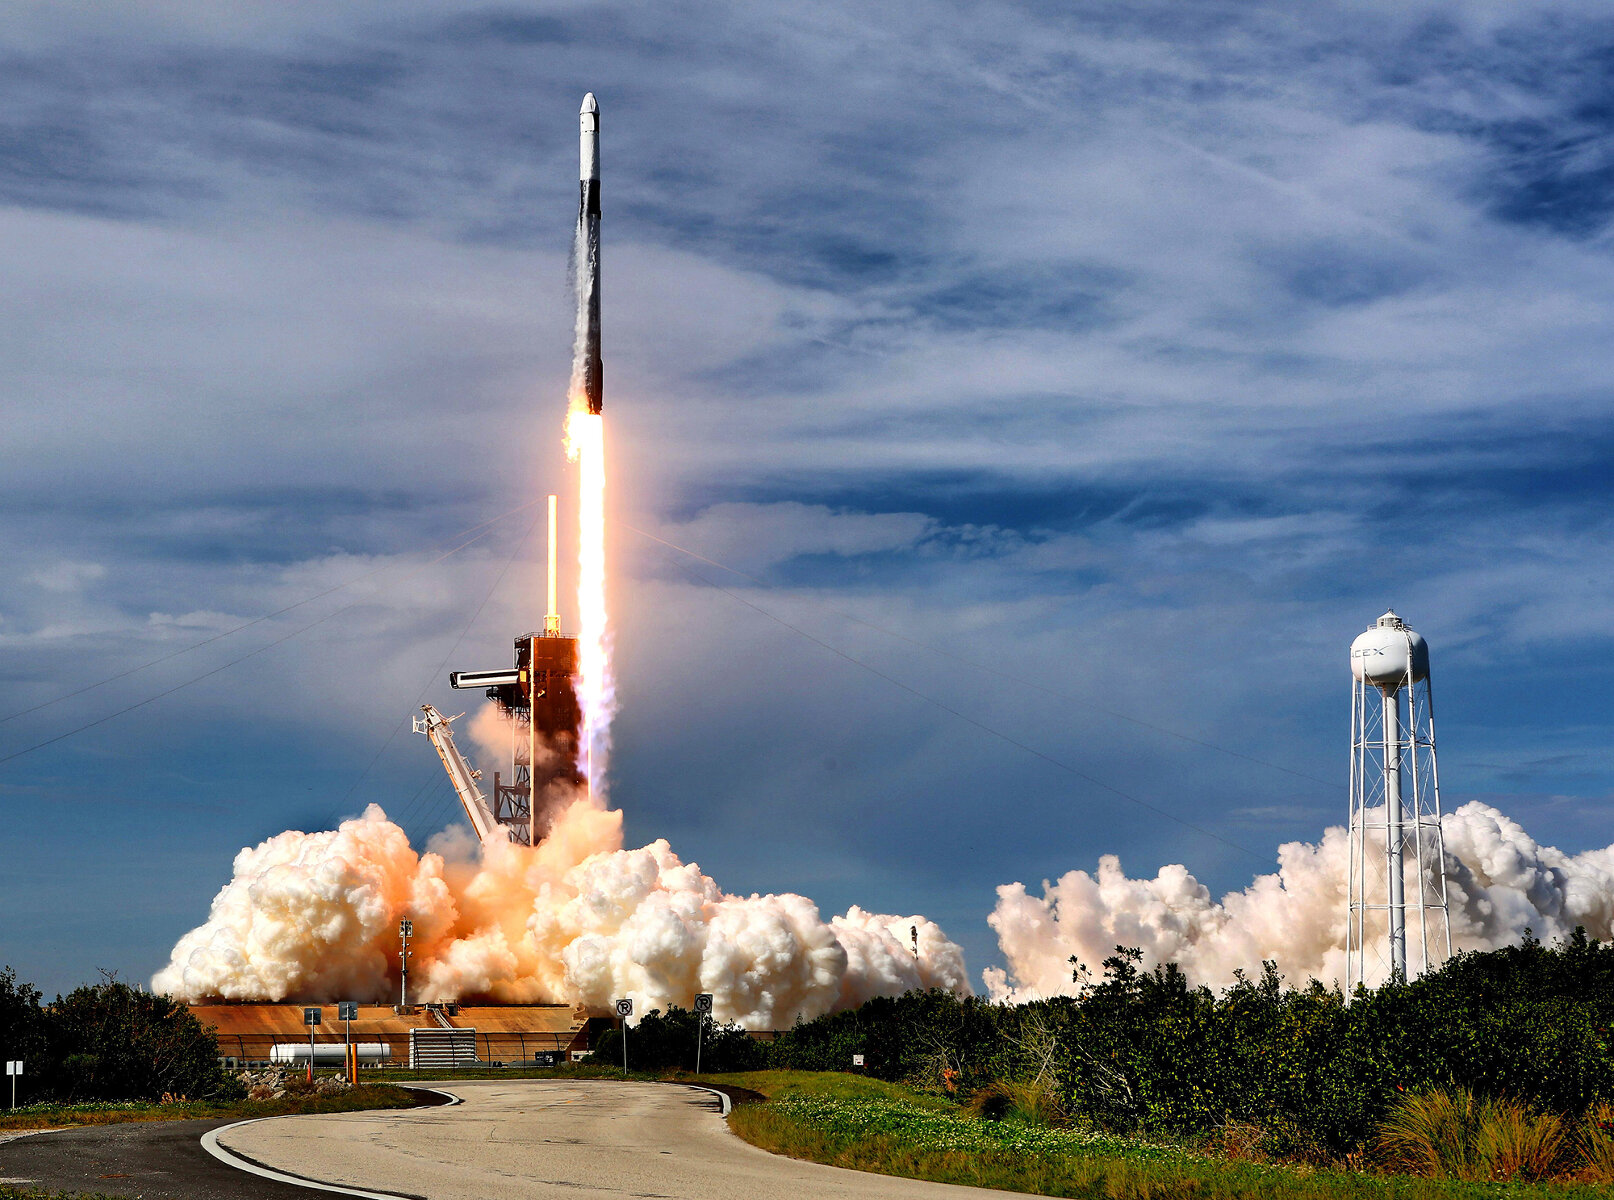 США. <p><strong>На фотографии&nbsp;&mdash;</strong> ракета-носитель Falcon 9&nbsp;компании SpaceX с грузовым кораблем Dragon 2 стартует с космодрома на мысе Канаверал, чтобы доставить груз на МКС 6 декабря 2020 года. Falcon 9 в 2020 году с 25 запусками&nbsp;<a href="https://rg.ru/2021/01/04/rossijskaia-raketa-soiuz-zaniala-vtoroe-mesto-v-mire-po-chislu-puskov.html" target="_blank">стала лидером</a> по количеству пусков в мире, опередив &laquo;Союзы&raquo; с 15 запусками. При этом из 25 ракет компании 23 успешно вернулись обратно на Землю &mdash; именно на технологию&nbsp;многоразового использования носителей рассчитывал Маск, начиная коммерческие полеты в космос.</p>